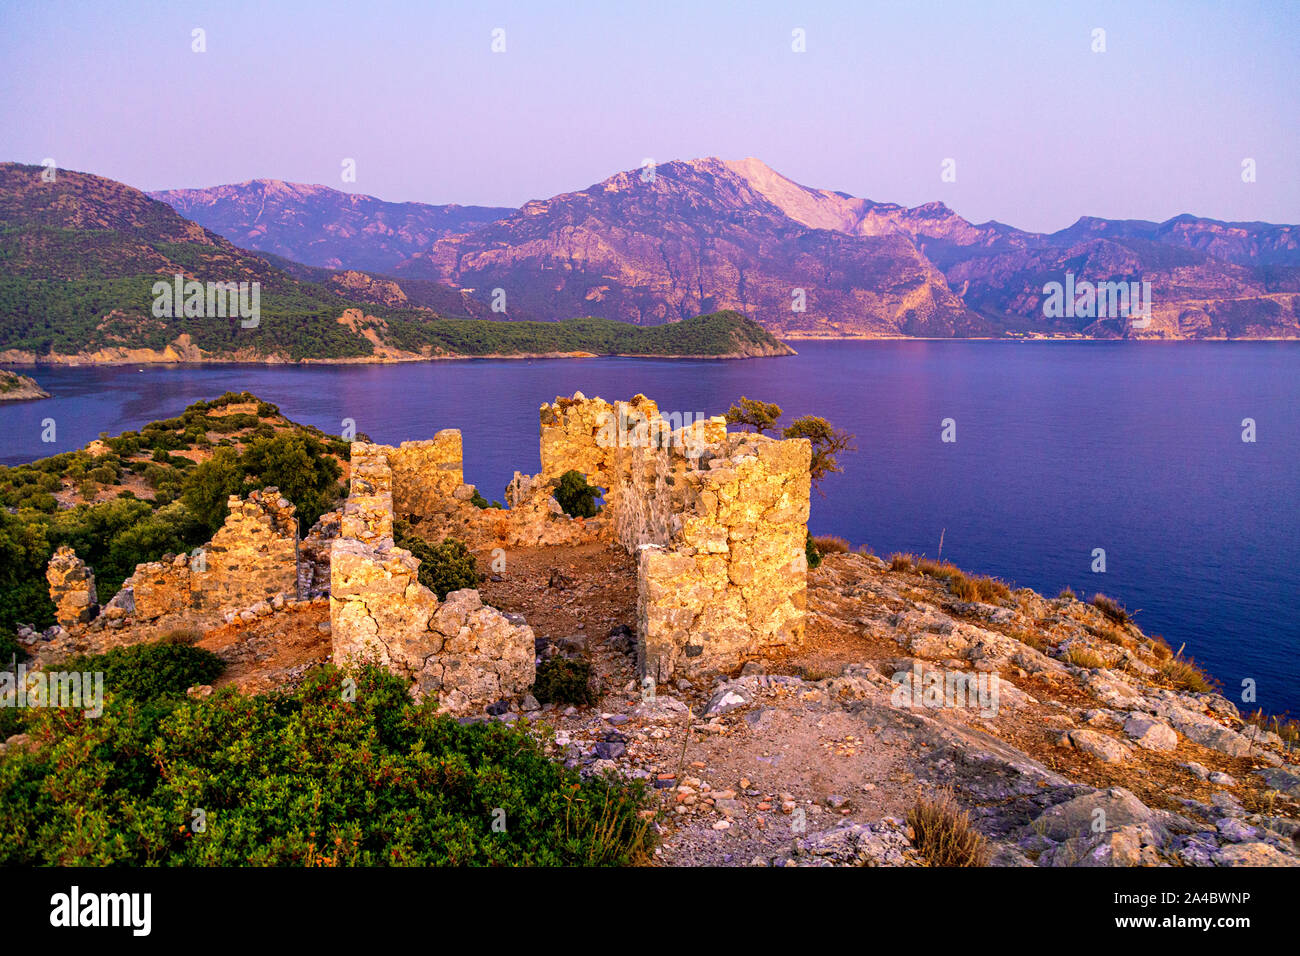 6th century church ruins at sunset on Gemiler Island, Turkish Riviera, Turkey Stock Photo